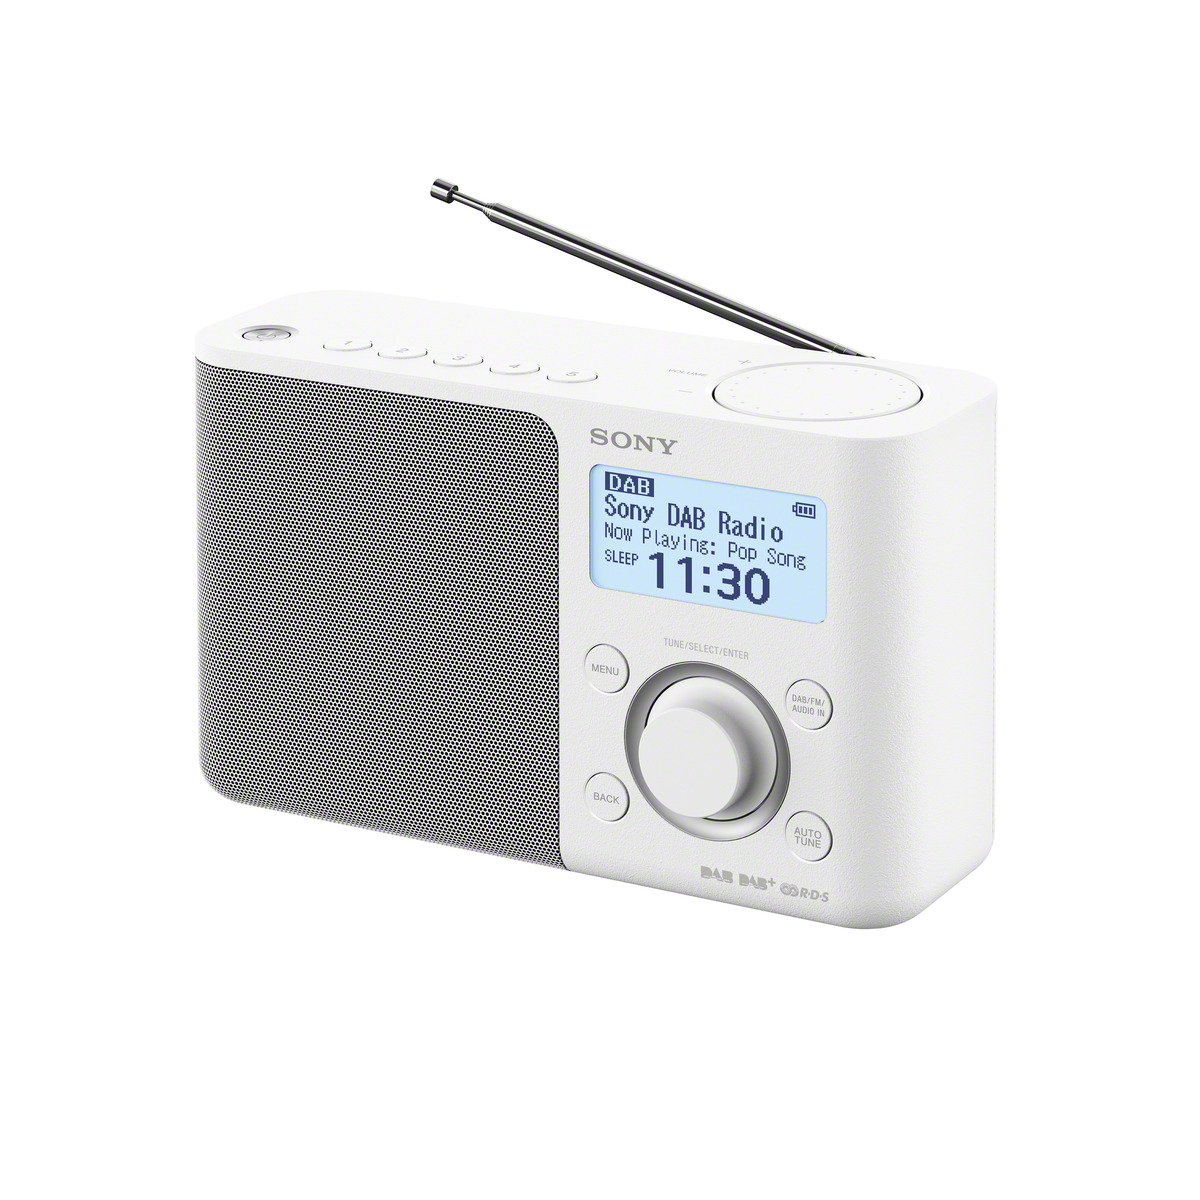 Weiß XDR-S61D Radio, DAB+, DAB+ FM, SONY DAB, digital,